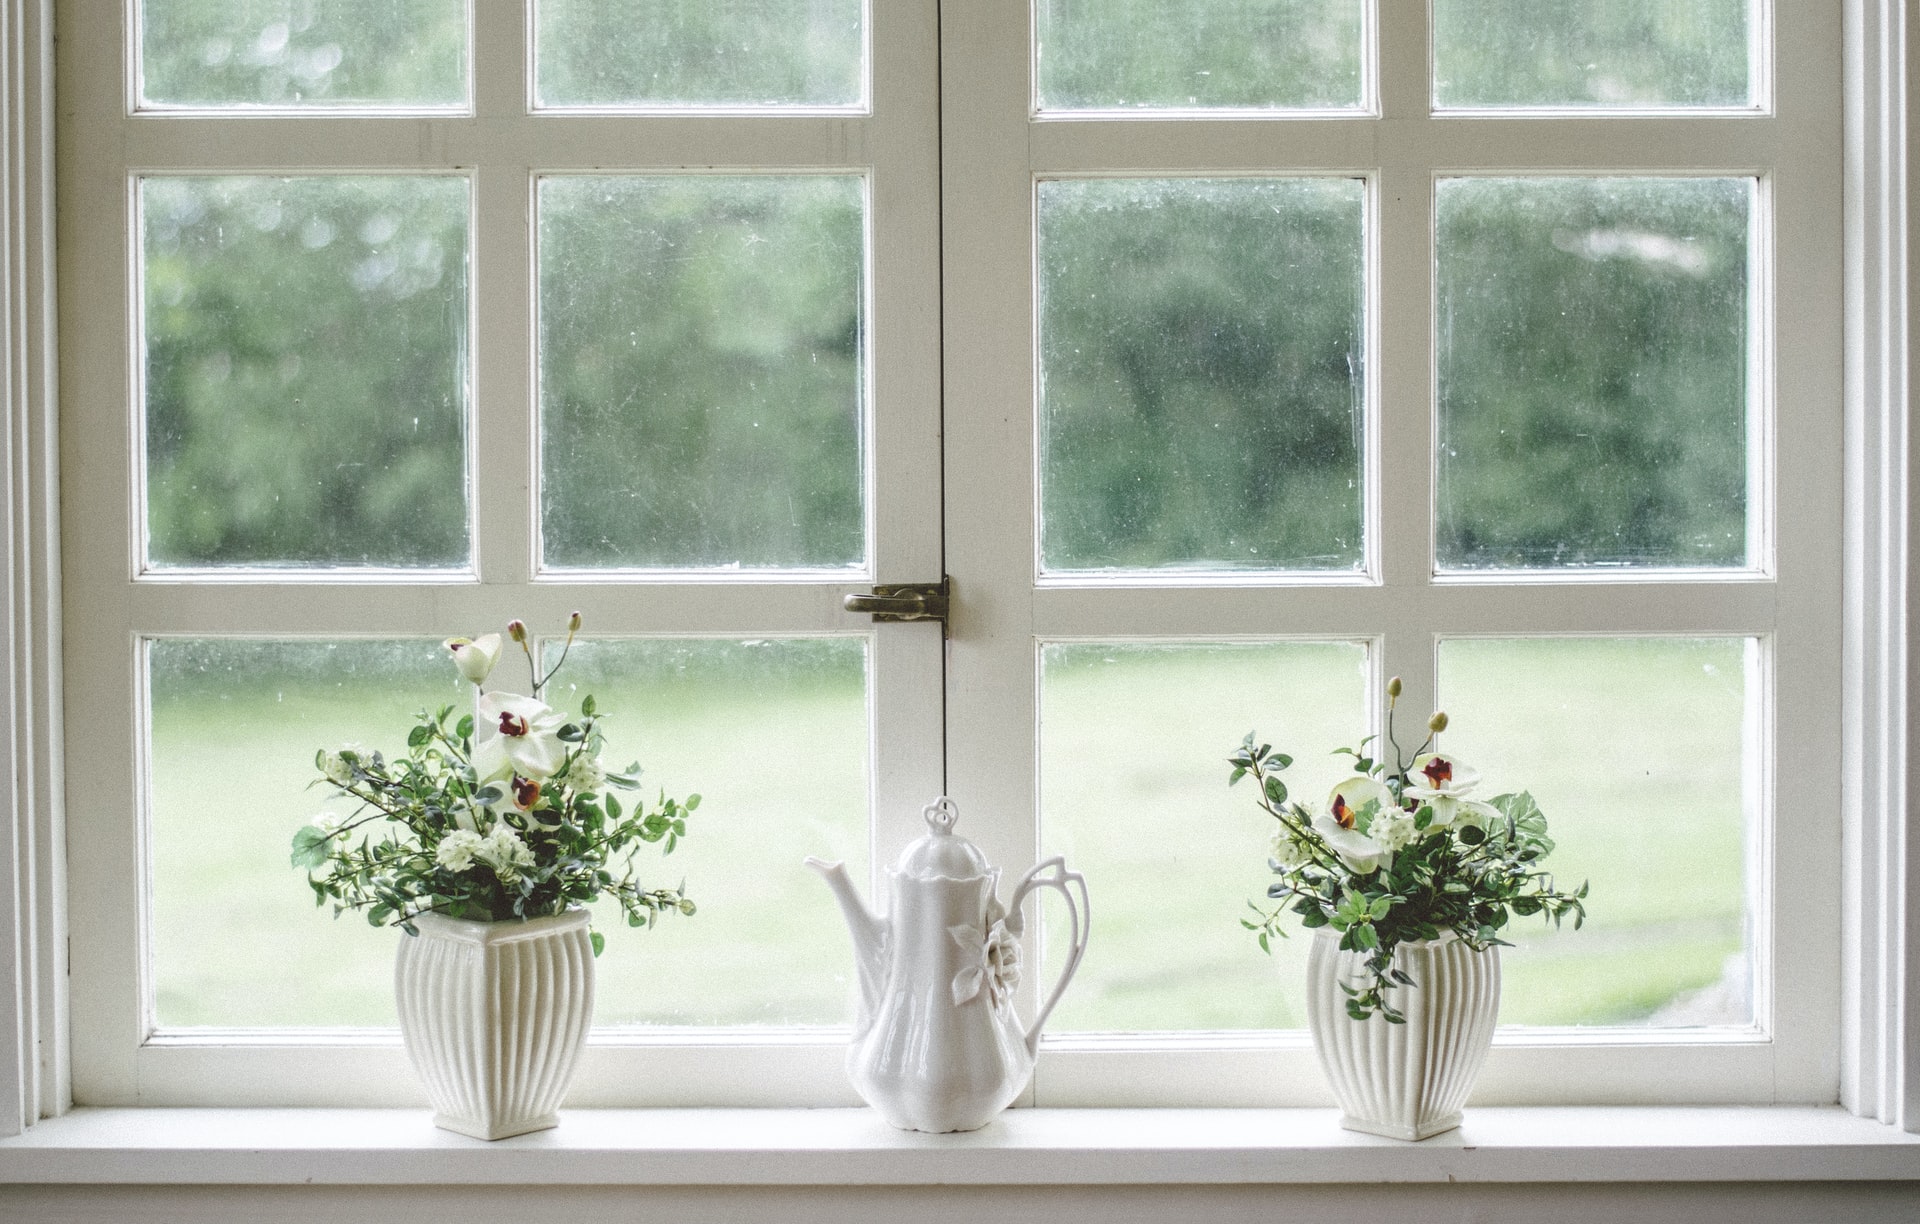 两个窗户manbetx客户端应用下载有白色涂漆的窗格，窗口的下半部分窗口锁。有两种植物坐在窗台上，在他们之间拍摄茶壶。